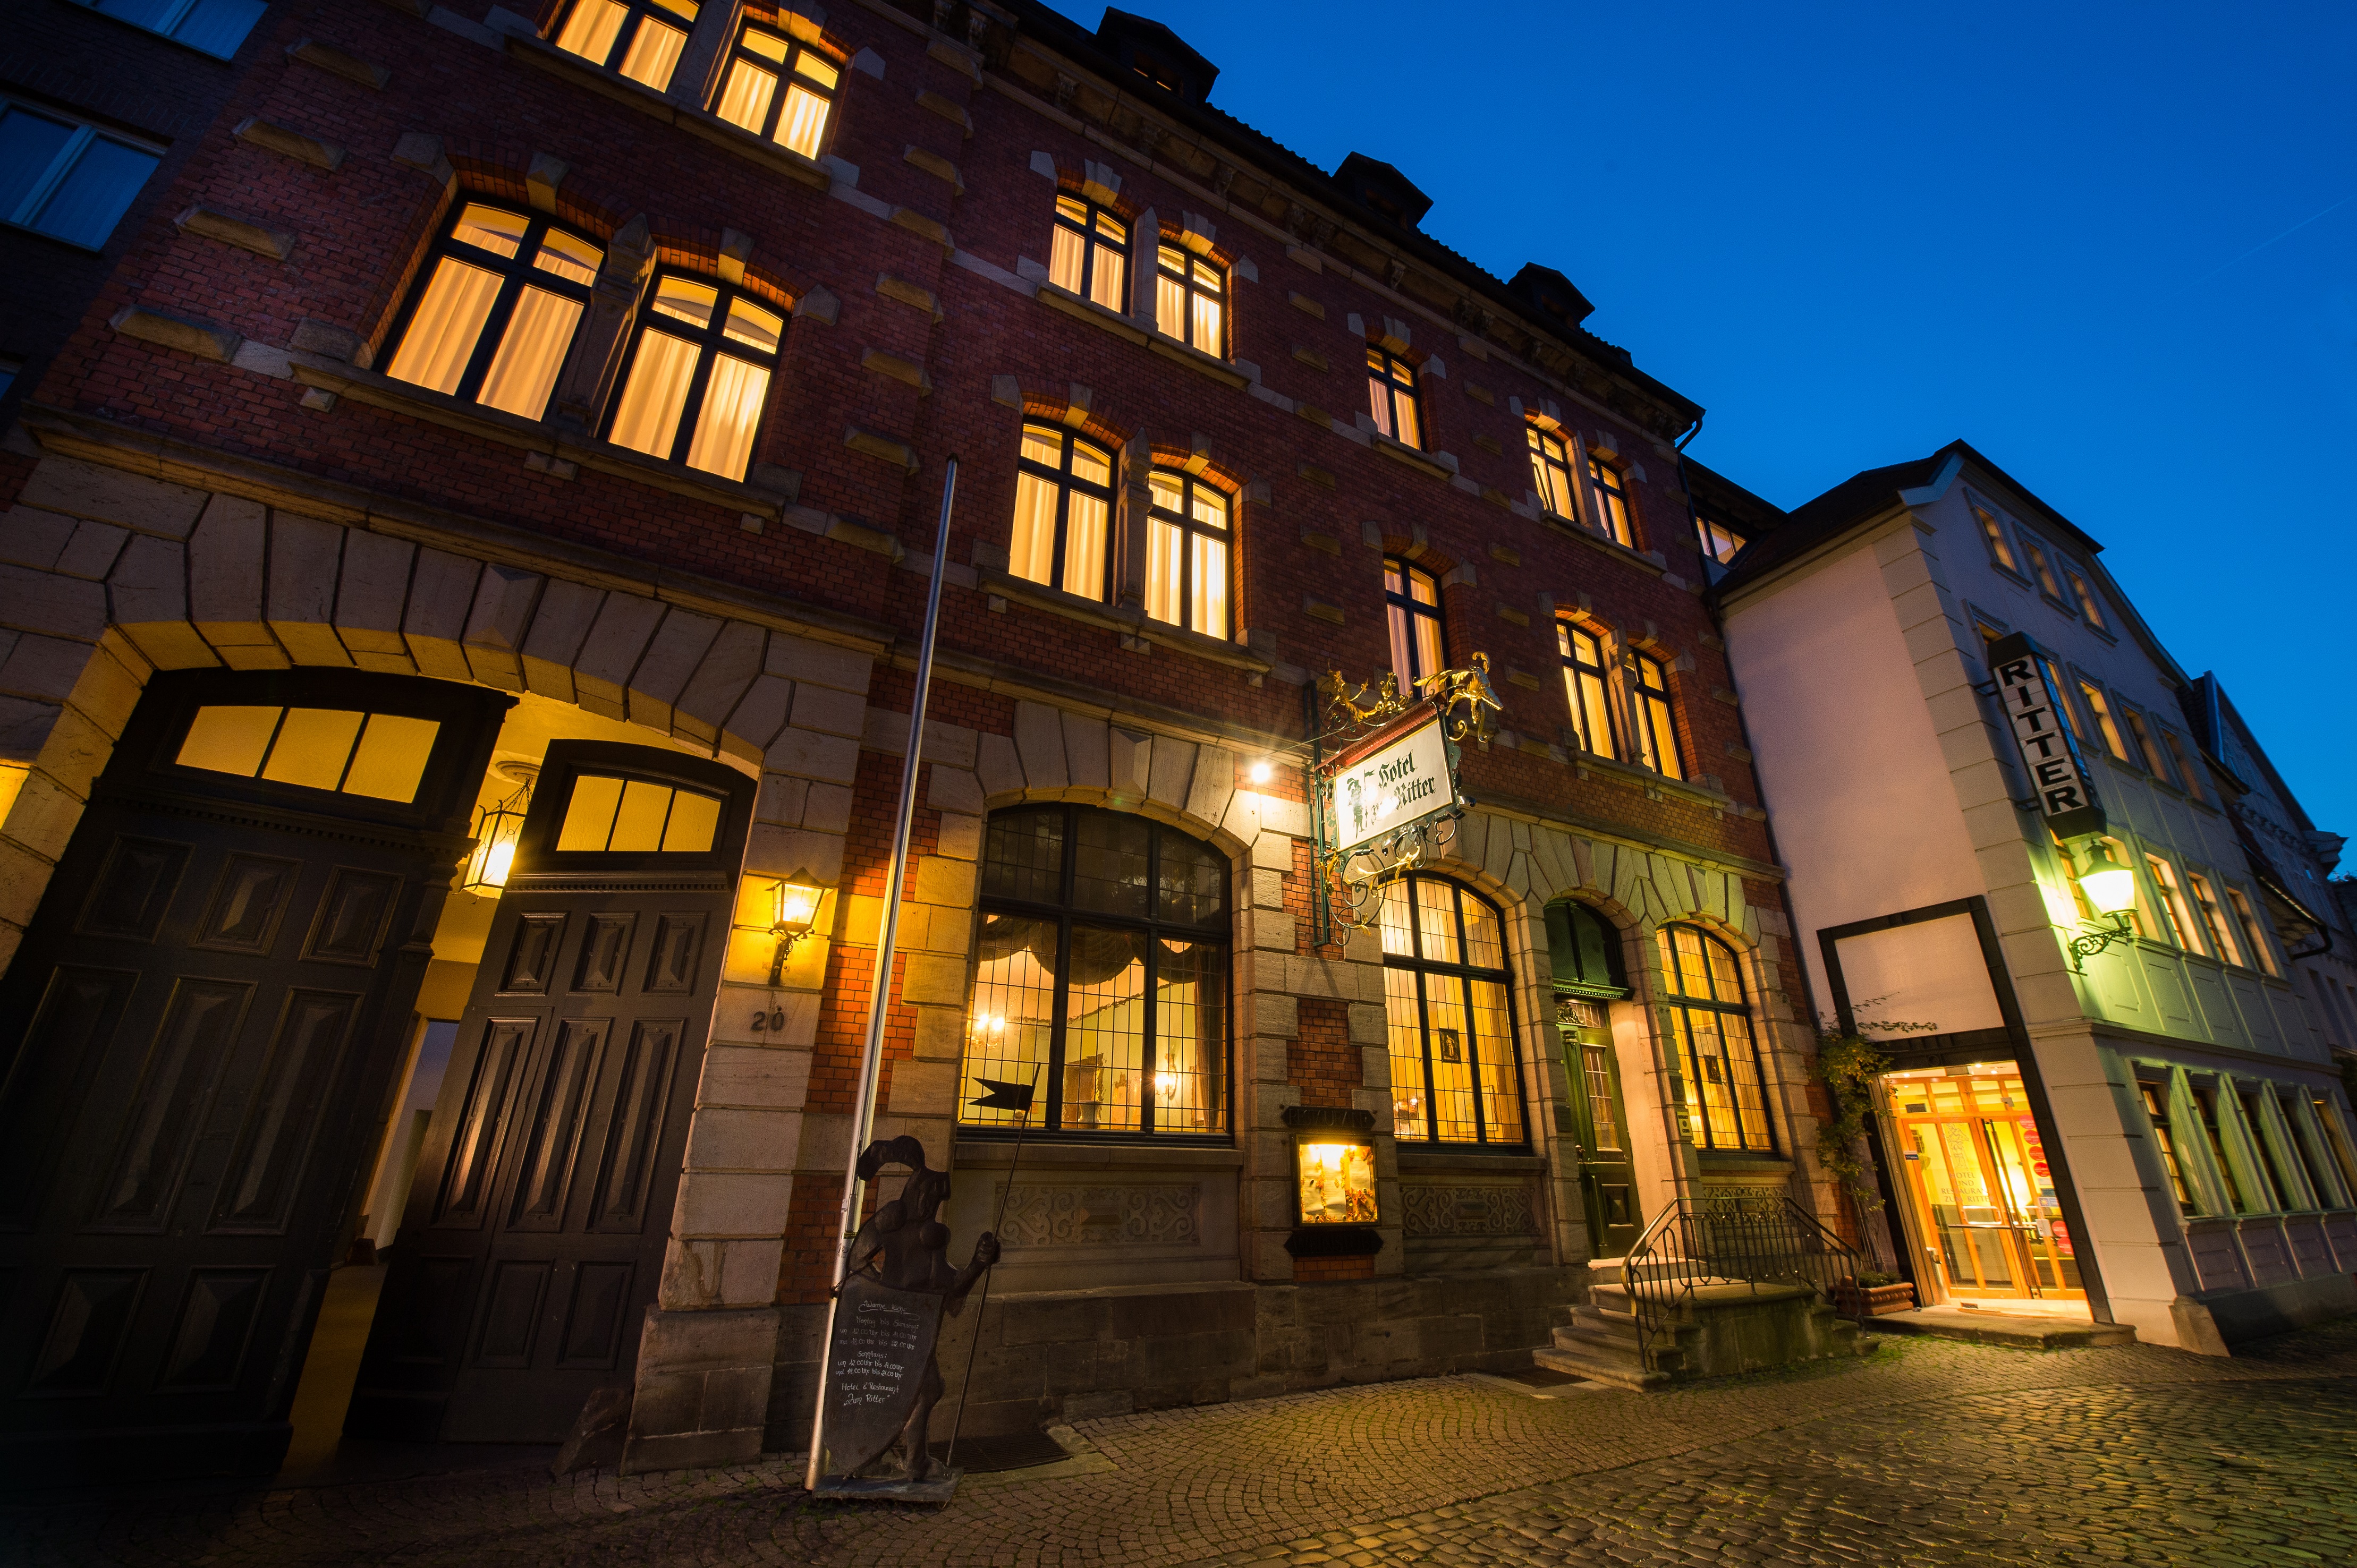 Schönes, altes Hotel in der Altstadt von Fulda Hotel Ritter